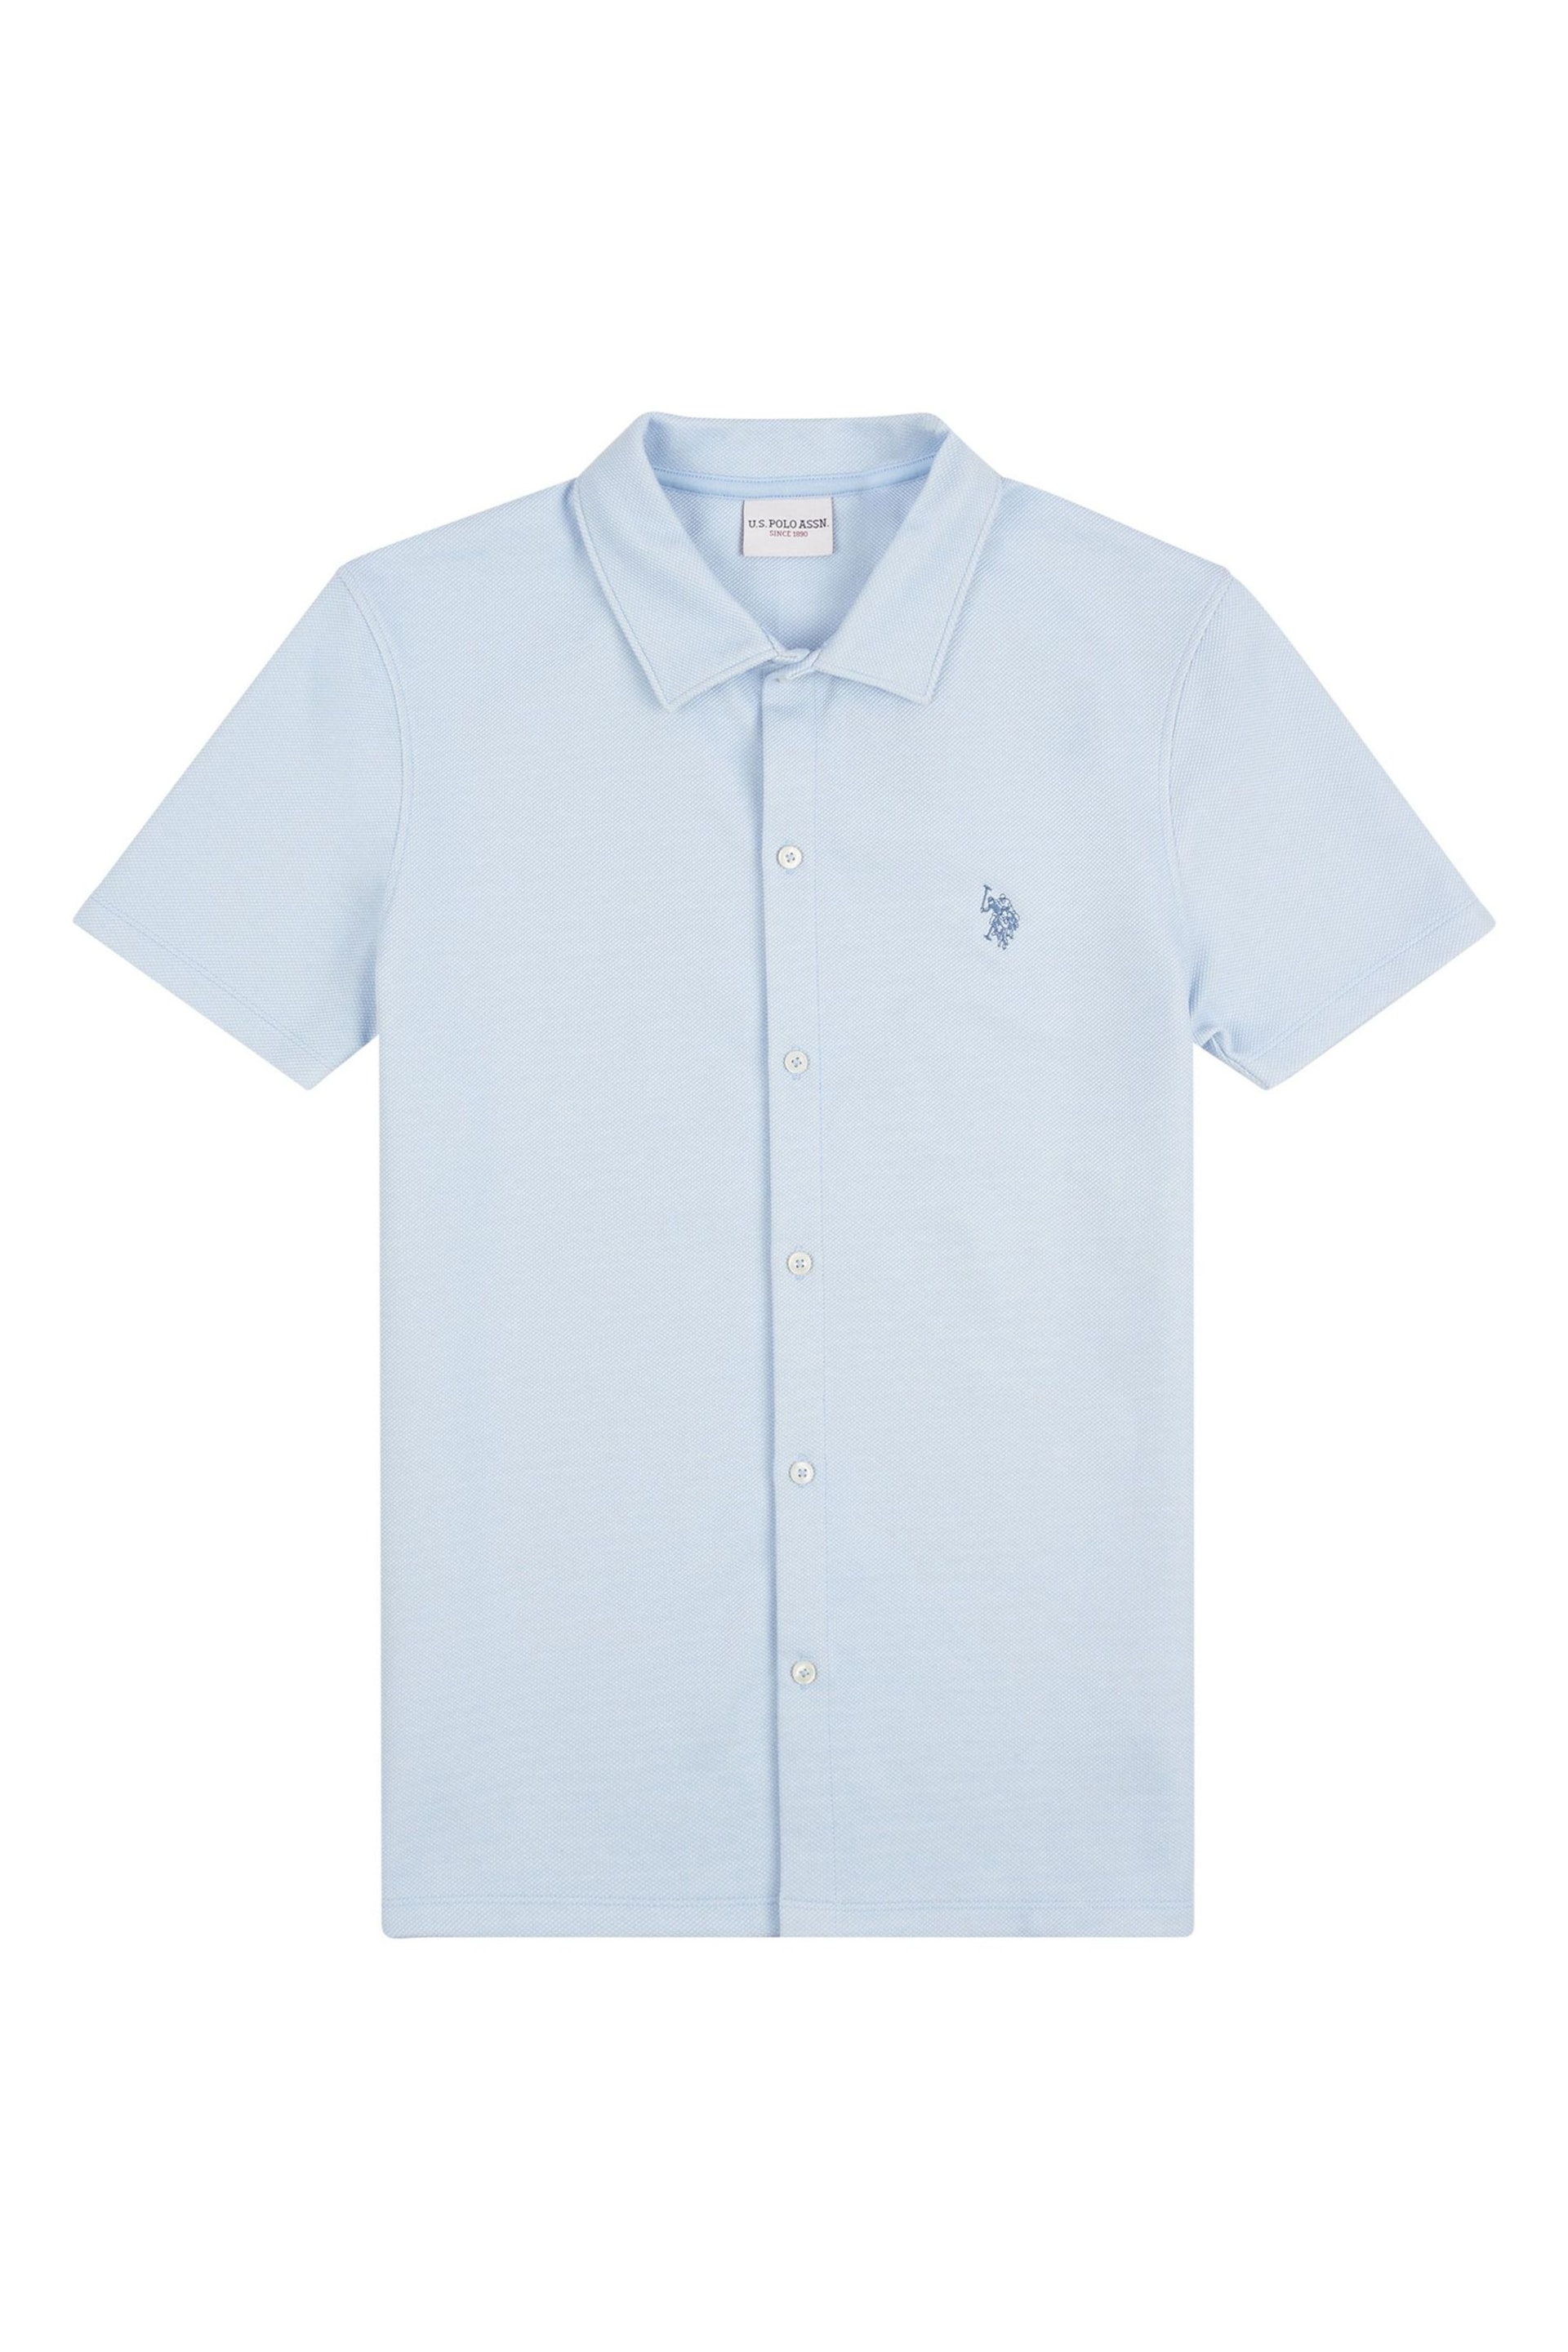 U.S. Polo Assn. Mens Regular Fit Blue Texture Short Sleeve Shirt - Image 5 of 7